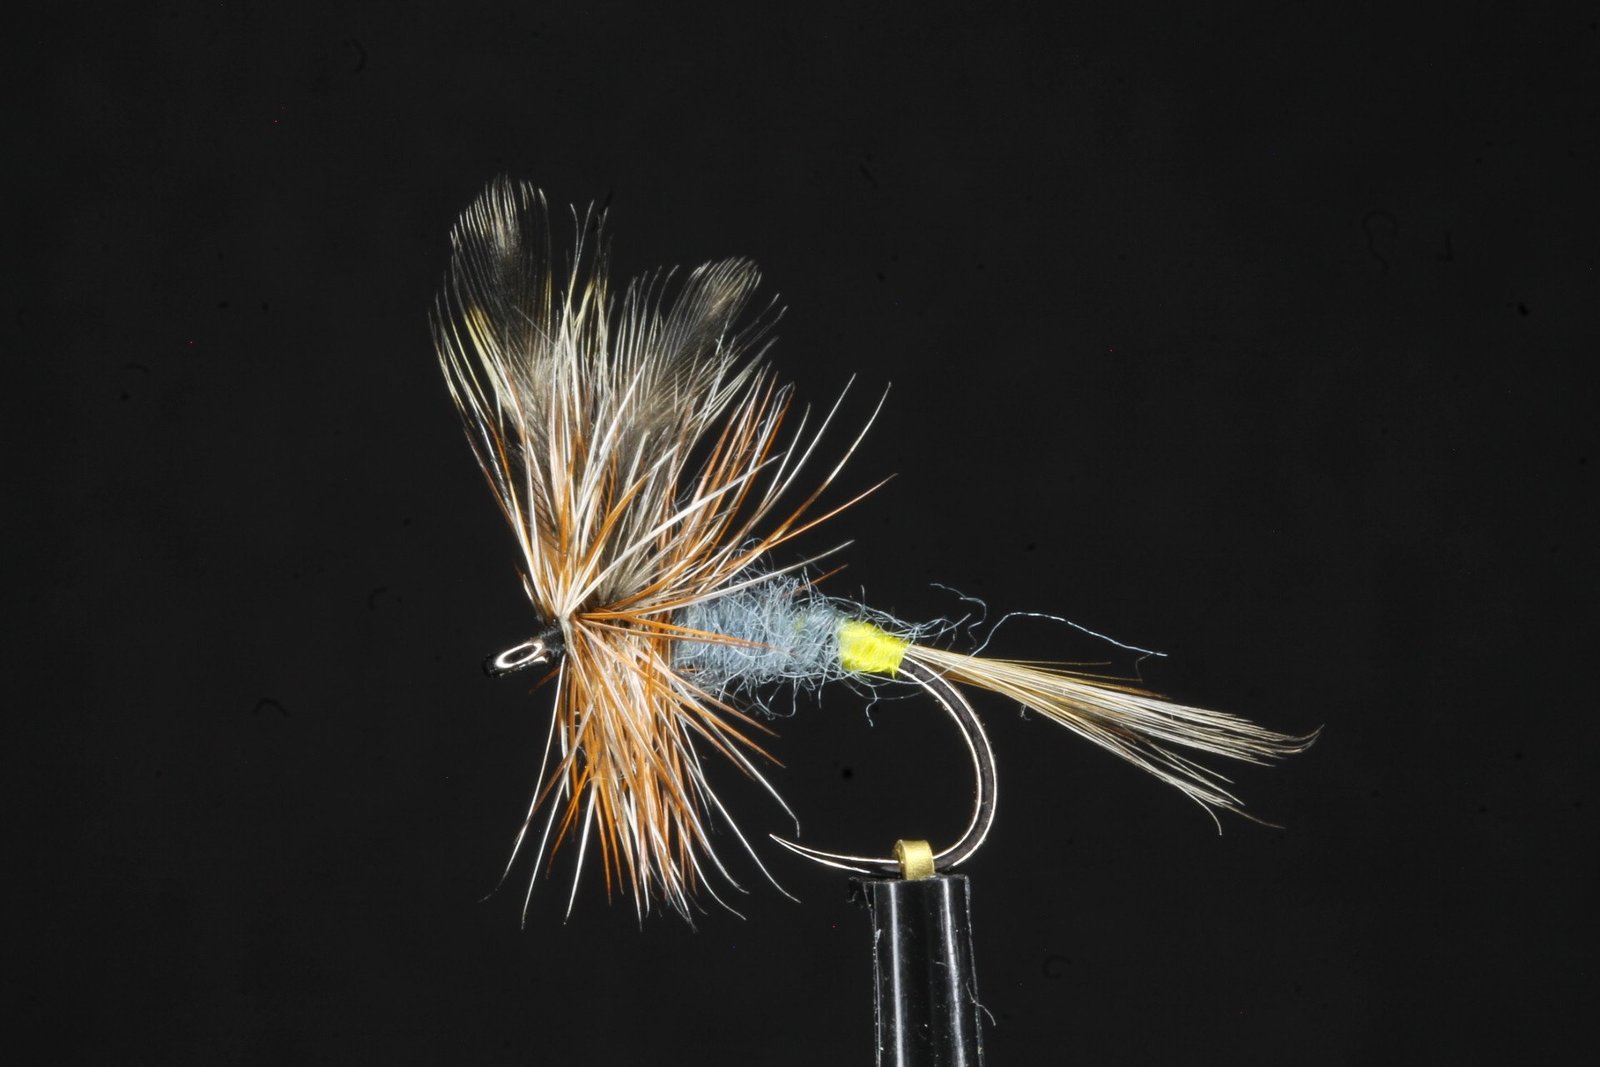 pack of dry trout flies, alder,caenis, & adams Troutflies Uk